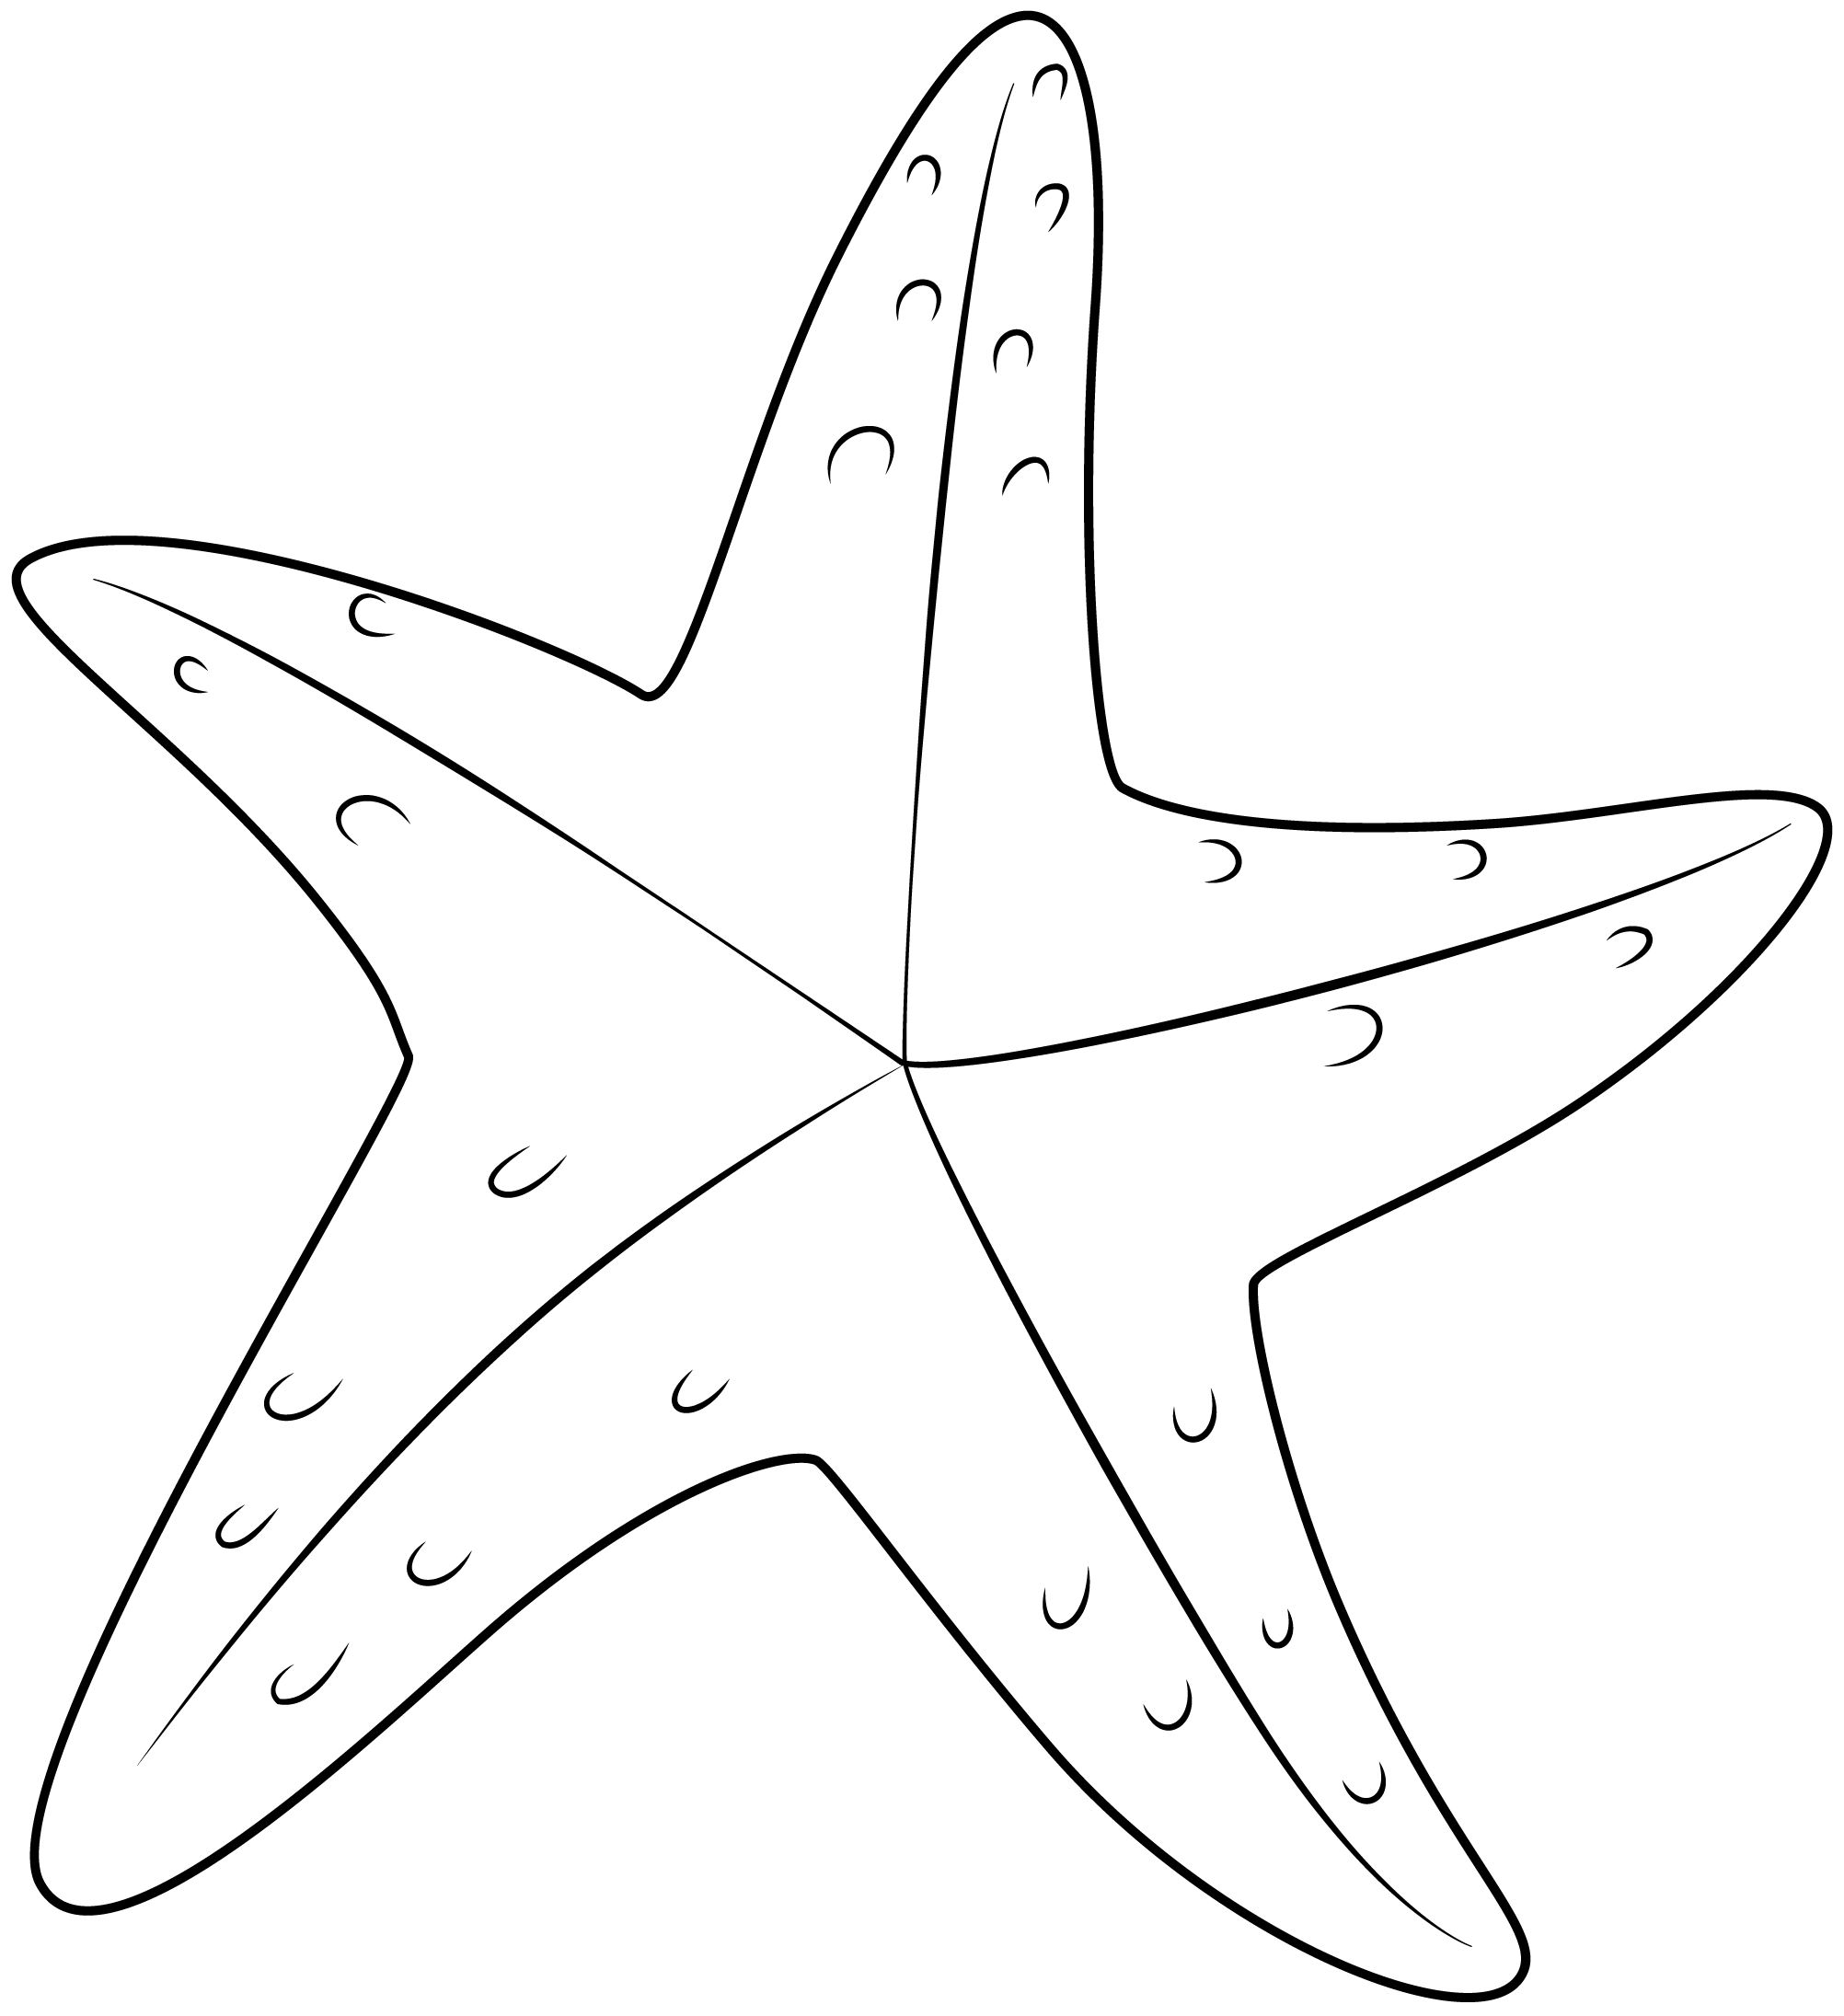 Шаблоны морских звезд 10 лучей